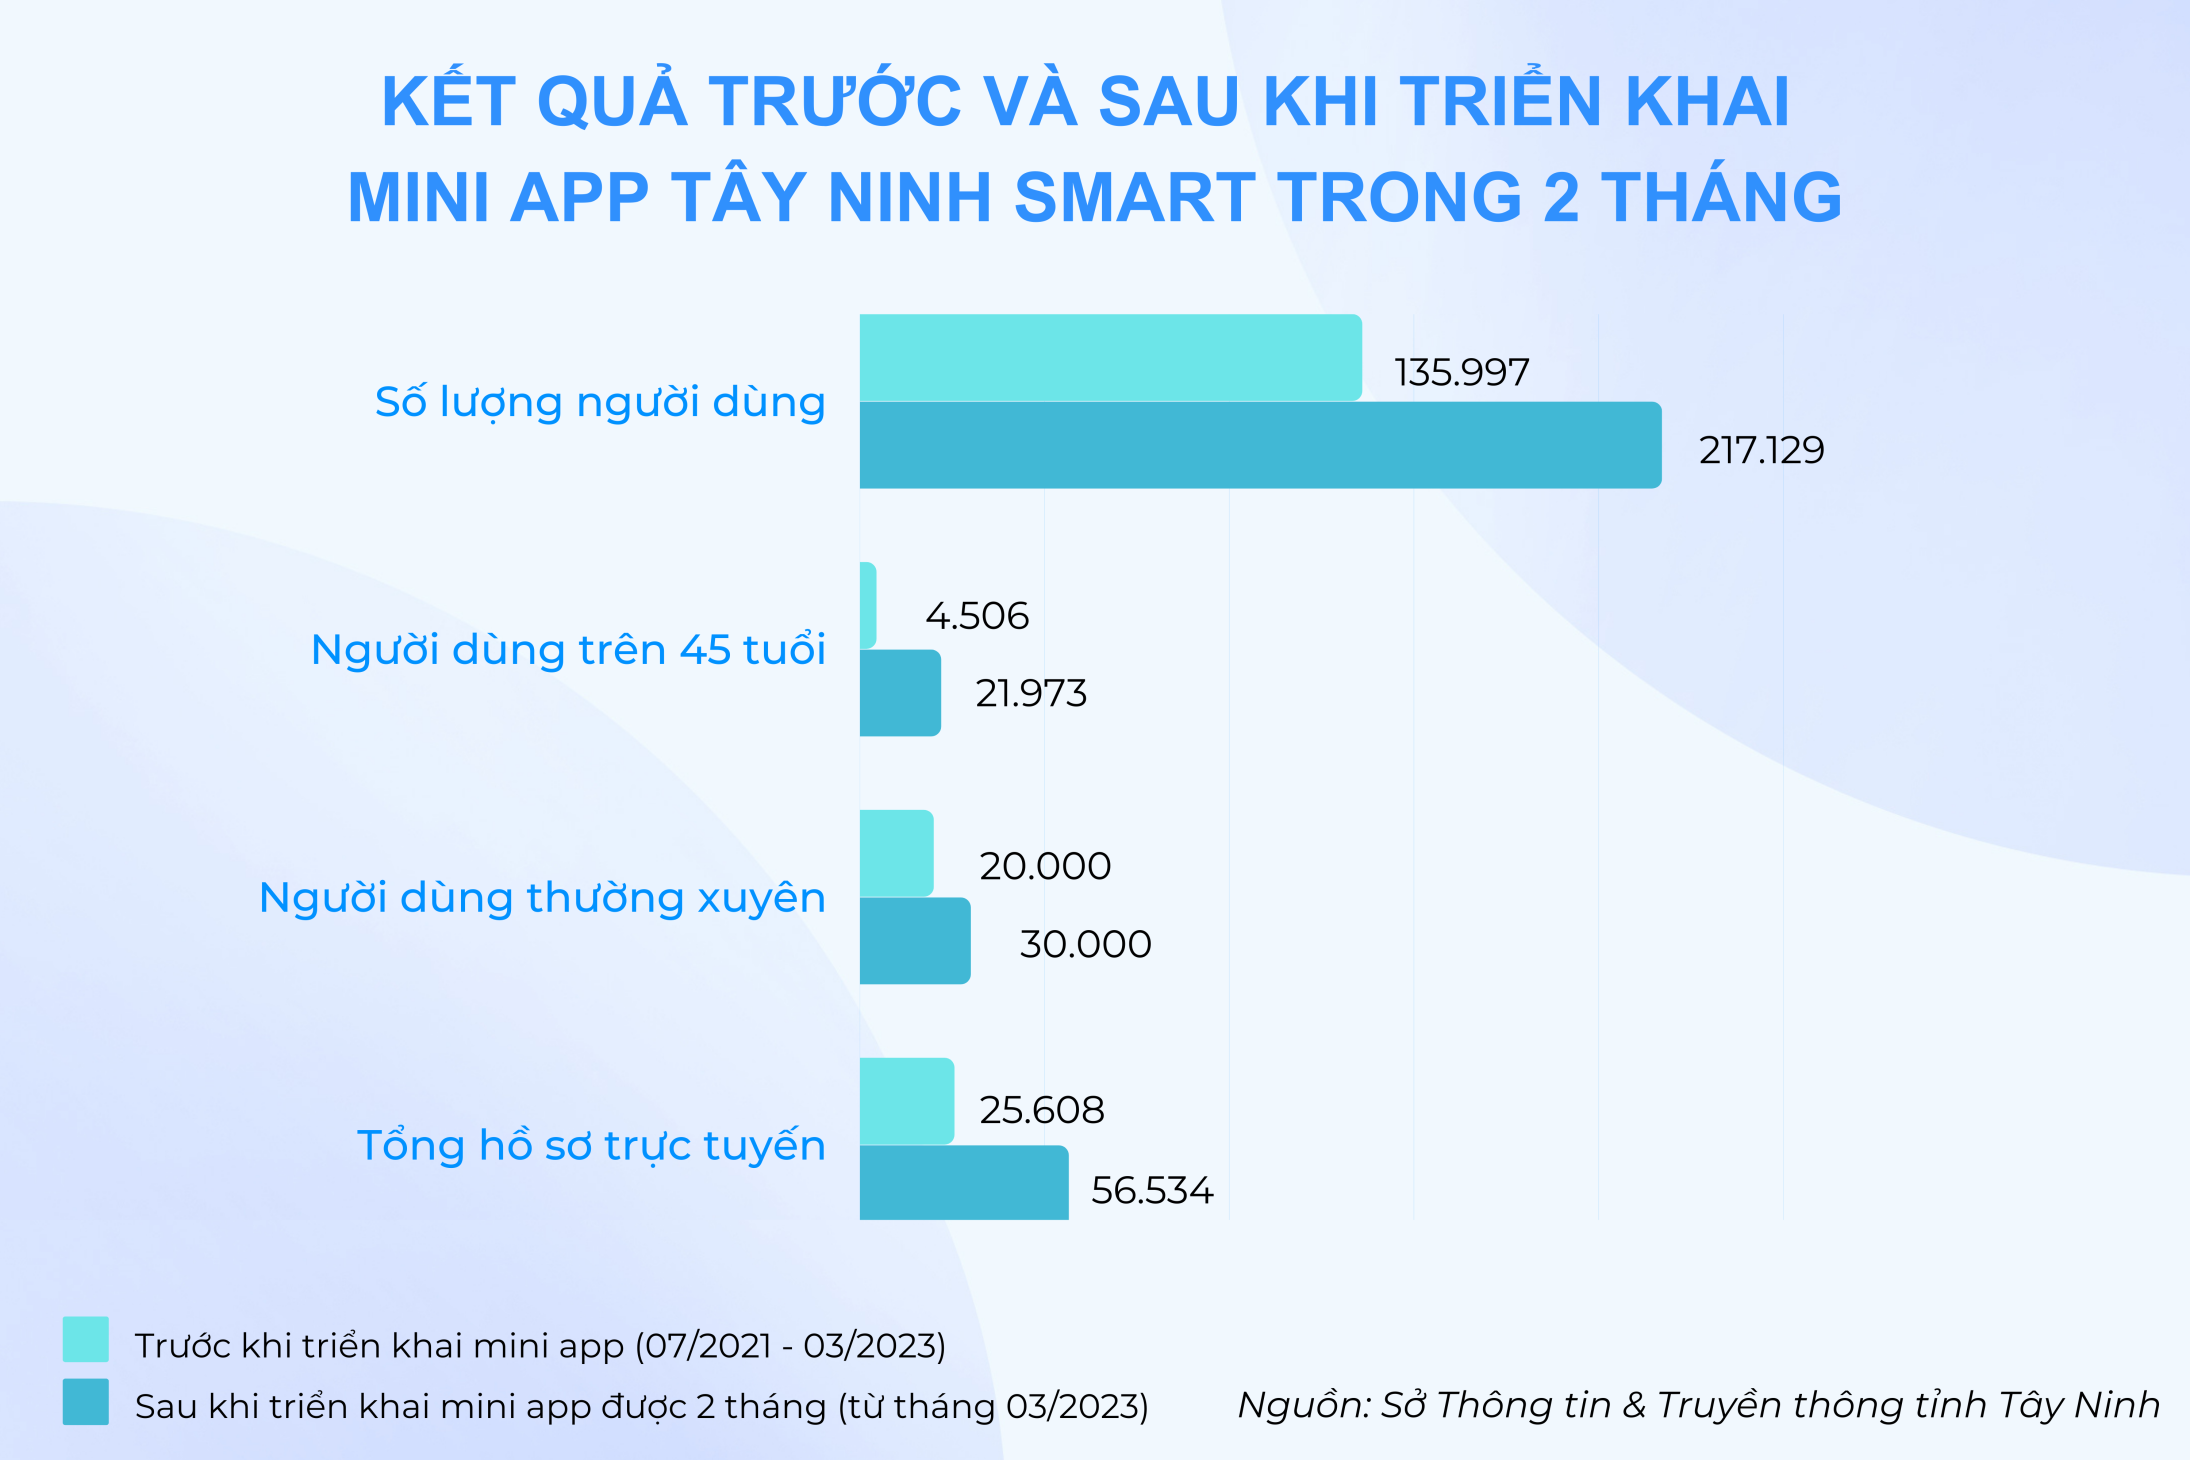 Mini app Tây Ninh Smart trên Zalo lập kỷ lục tăng lượng người lớn tuổi sử dụng - Tay Ninh Anh 1